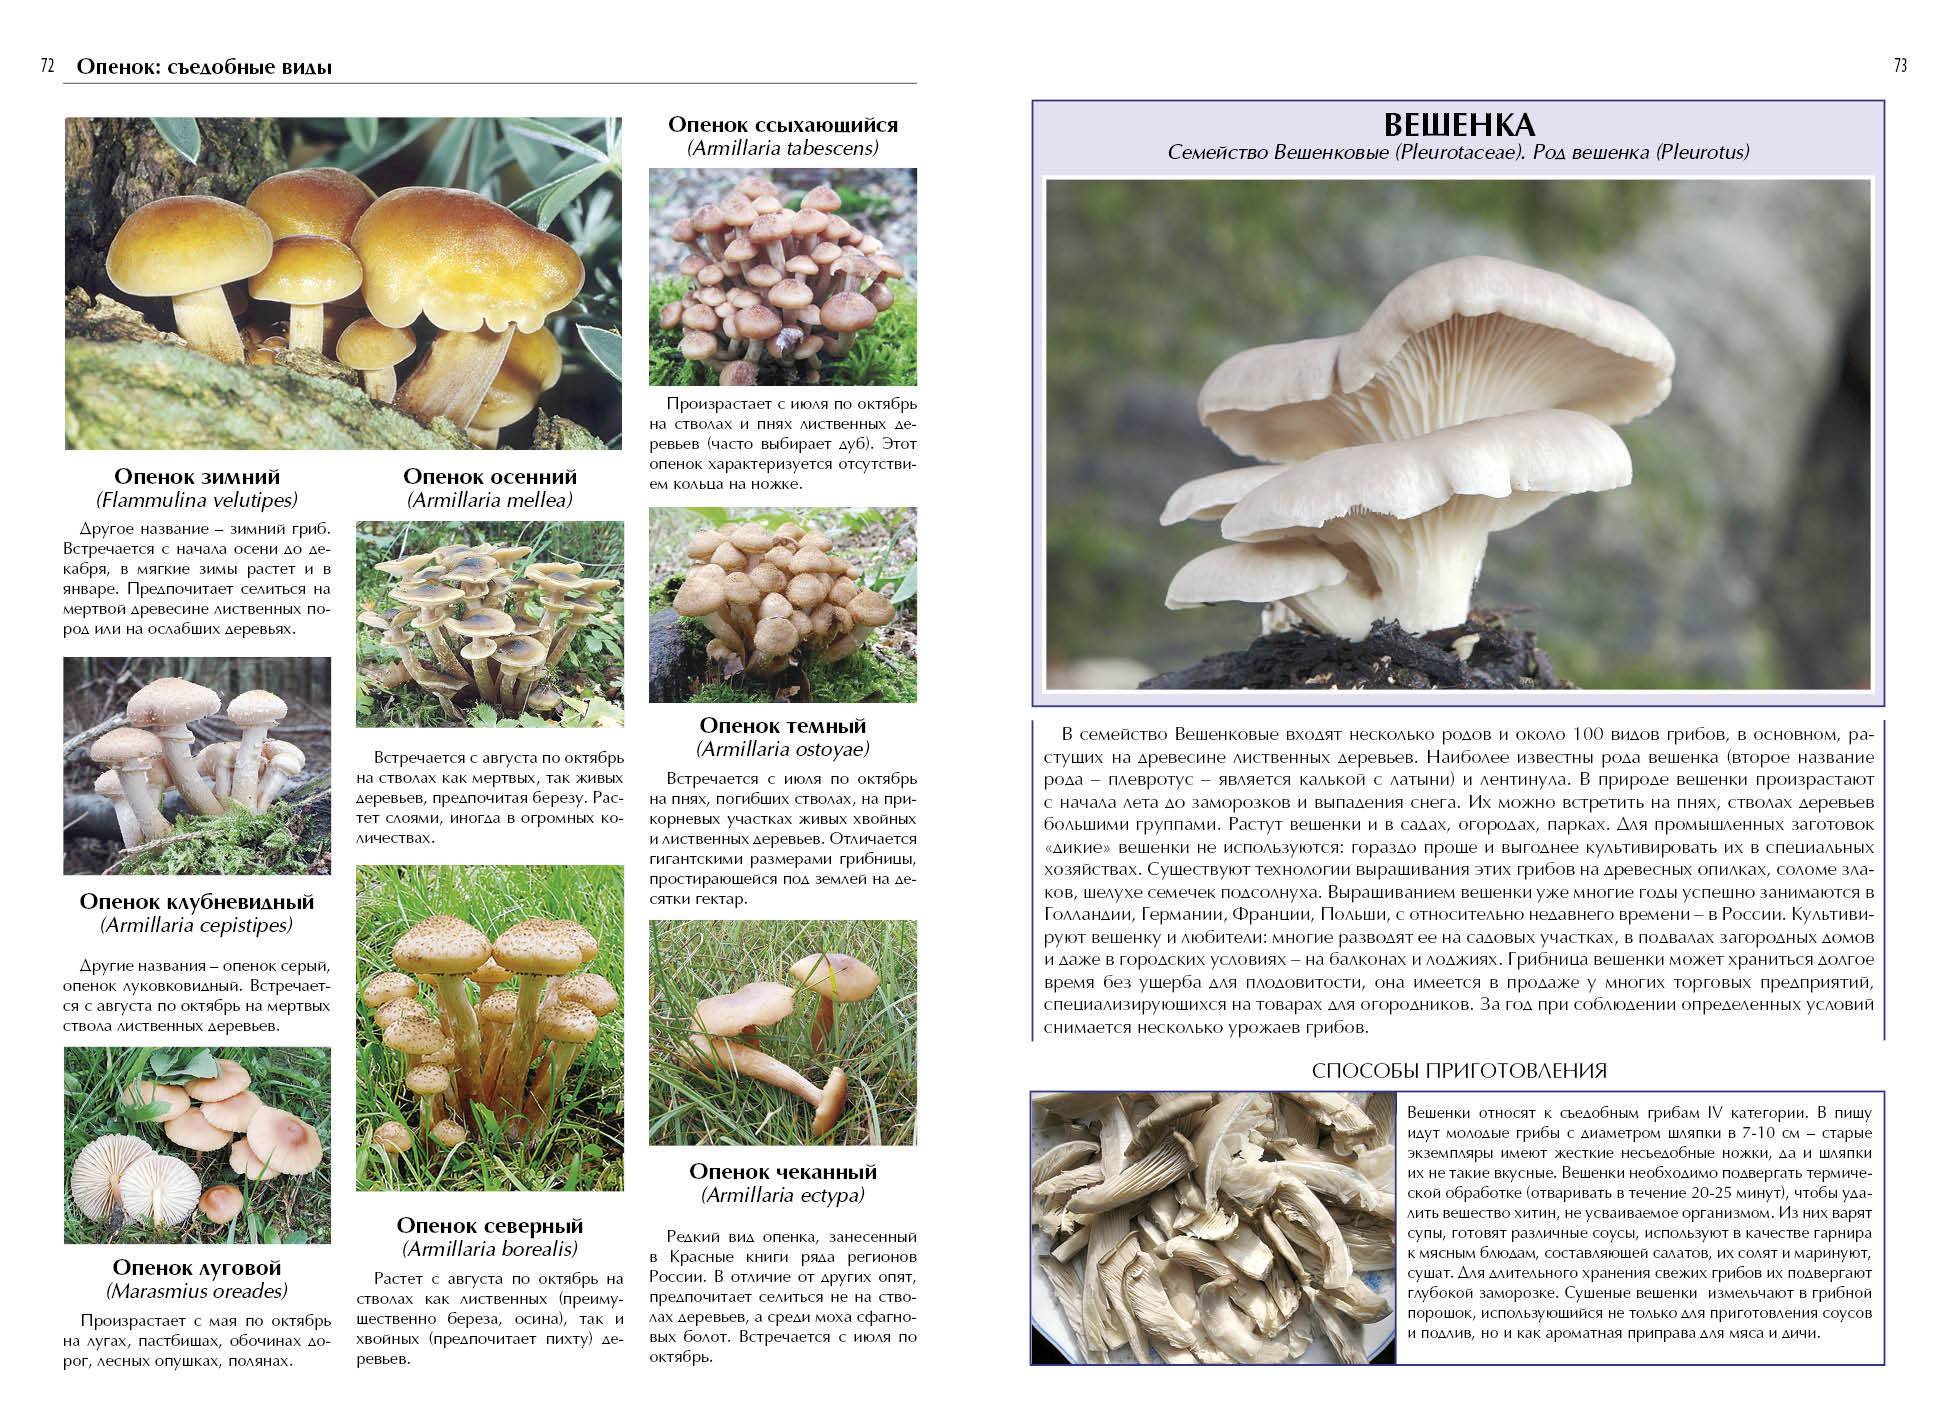 Популярные съедобные грибы. фото, названия и описание. — ботаничка